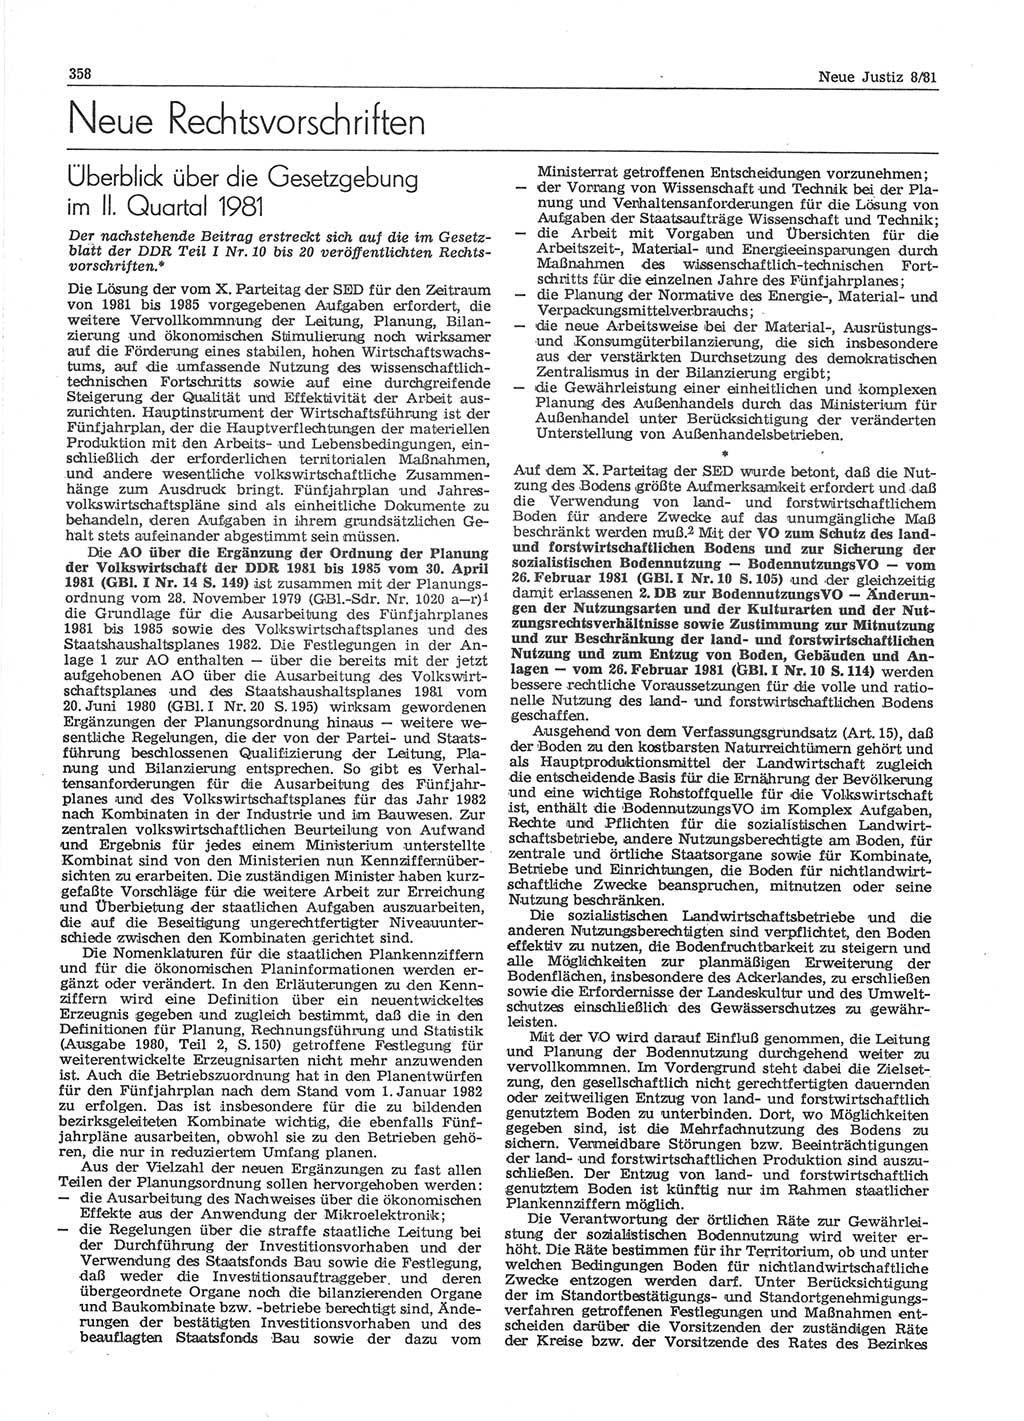 Neue Justiz (NJ), Zeitschrift für sozialistisches Recht und Gesetzlichkeit [Deutsche Demokratische Republik (DDR)], 35. Jahrgang 1981, Seite 358 (NJ DDR 1981, S. 358)